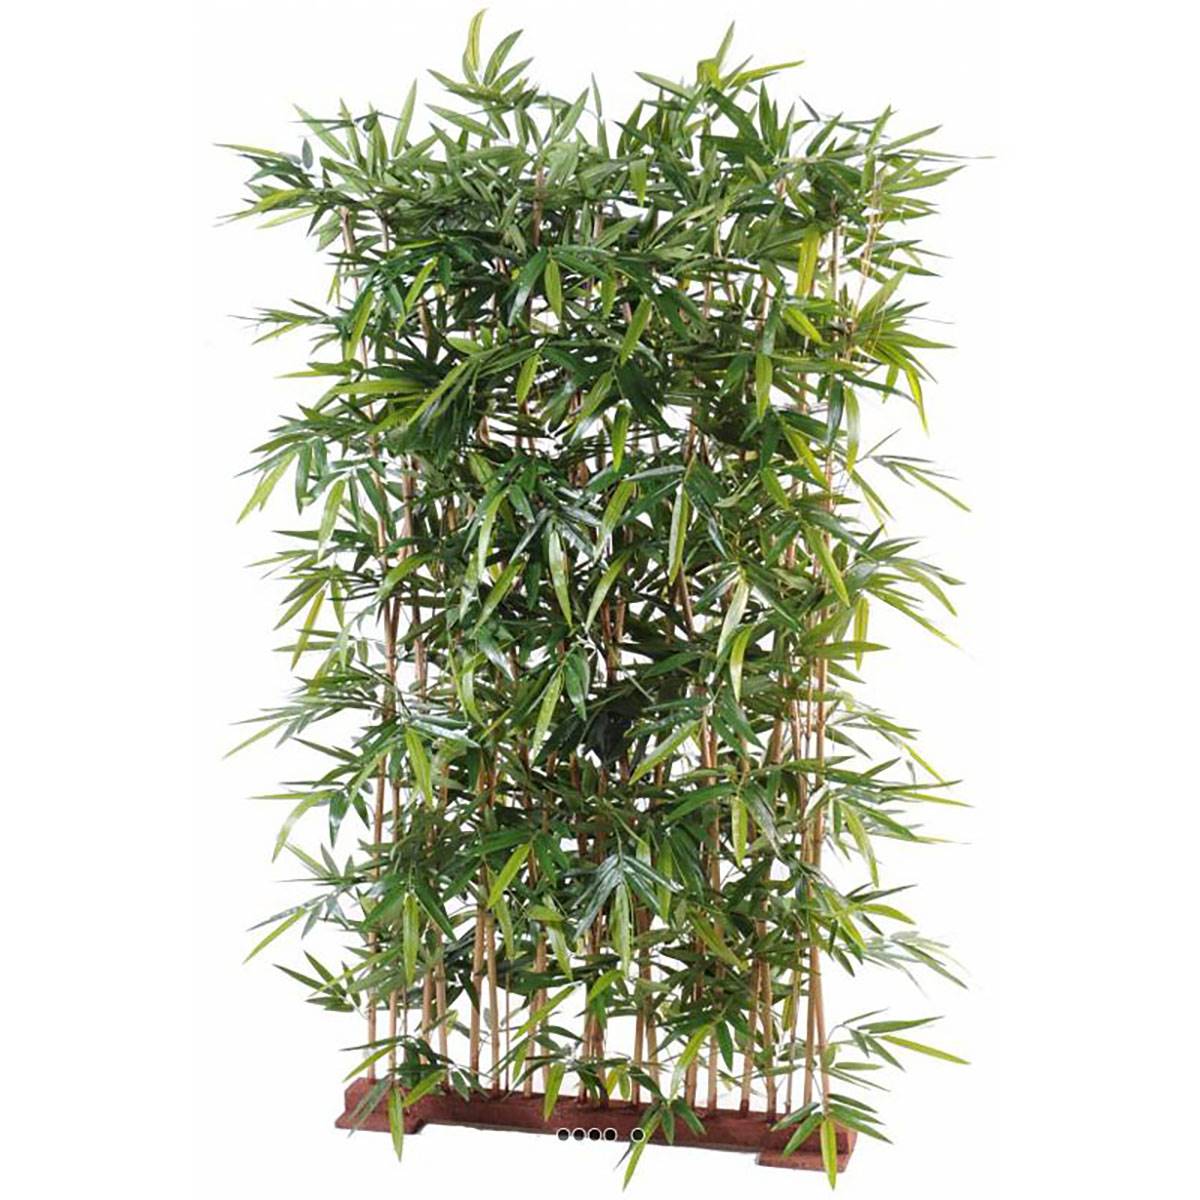 Haie de bambou artificiel sur socle haut de gamme | Artificielles.com